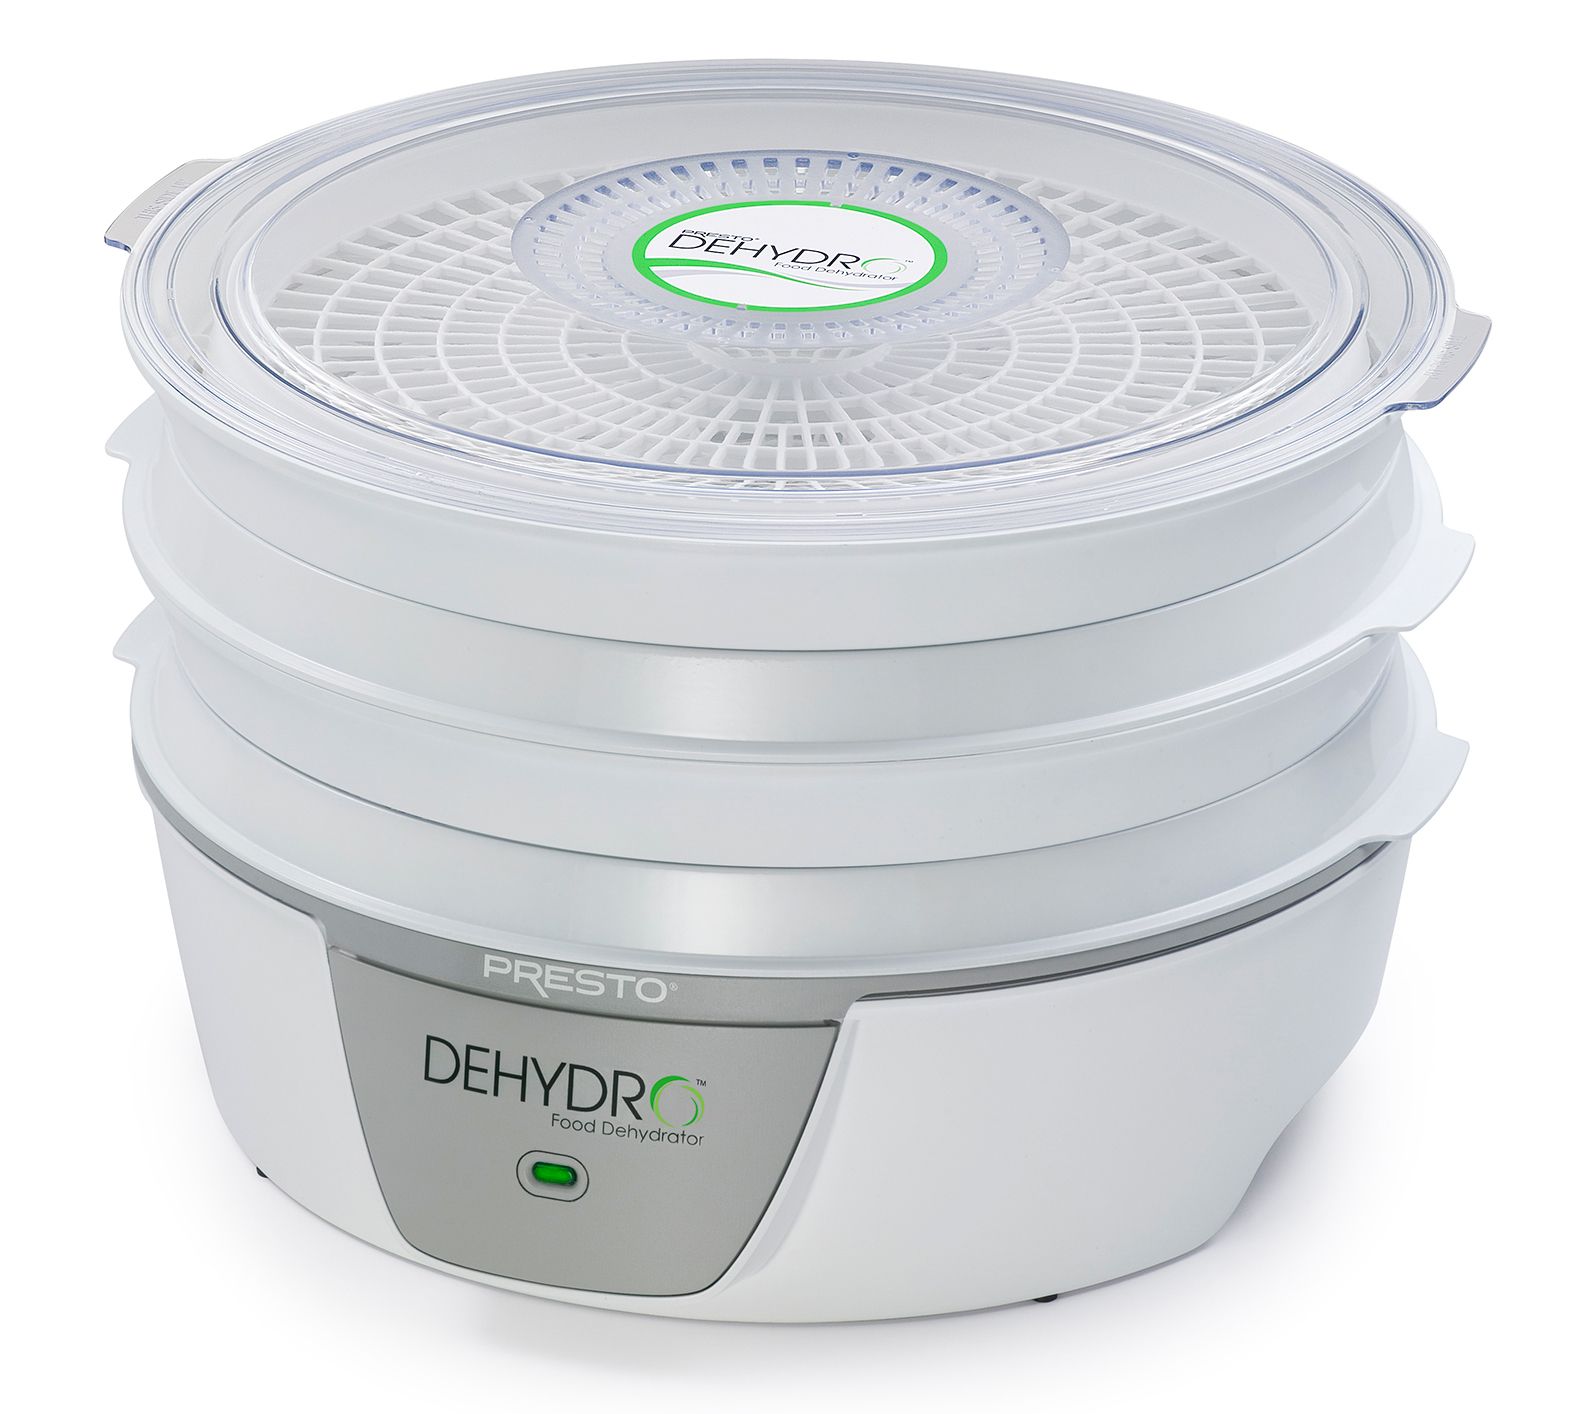 Presto Dehydro Digital Food Dehydrator